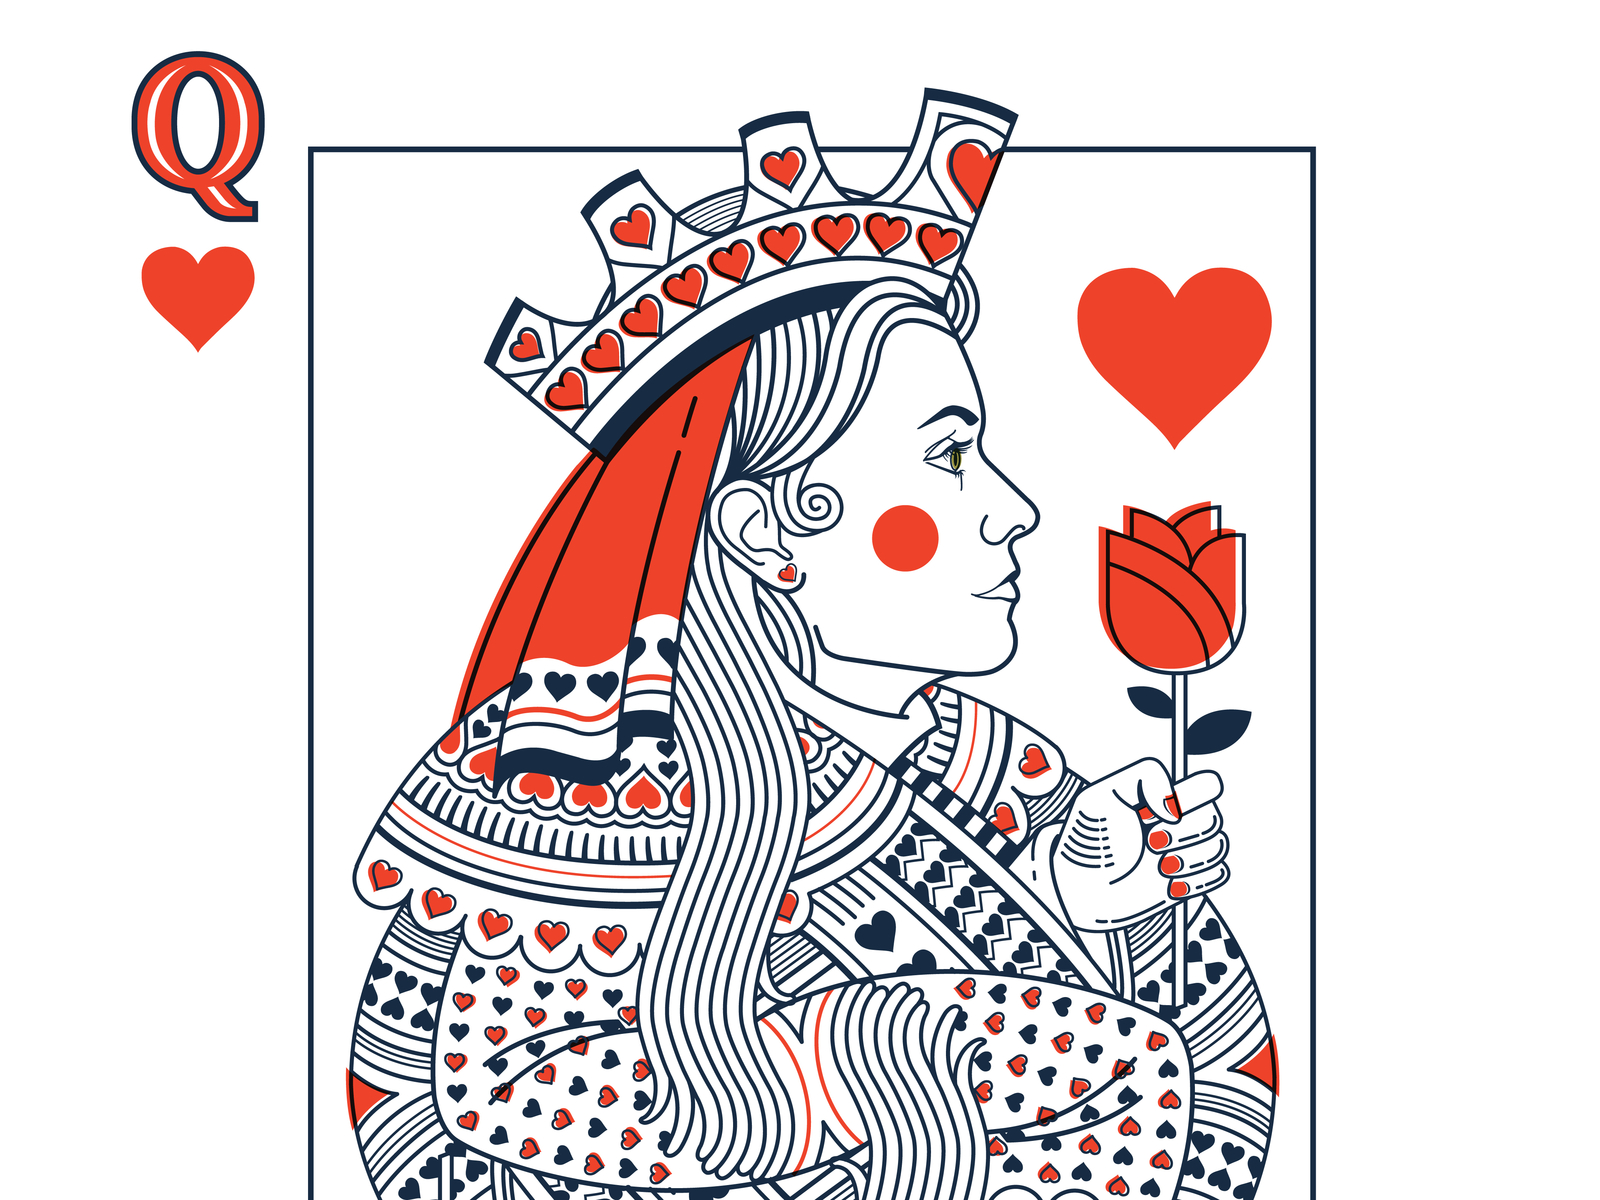 Queen of Hearts detail.